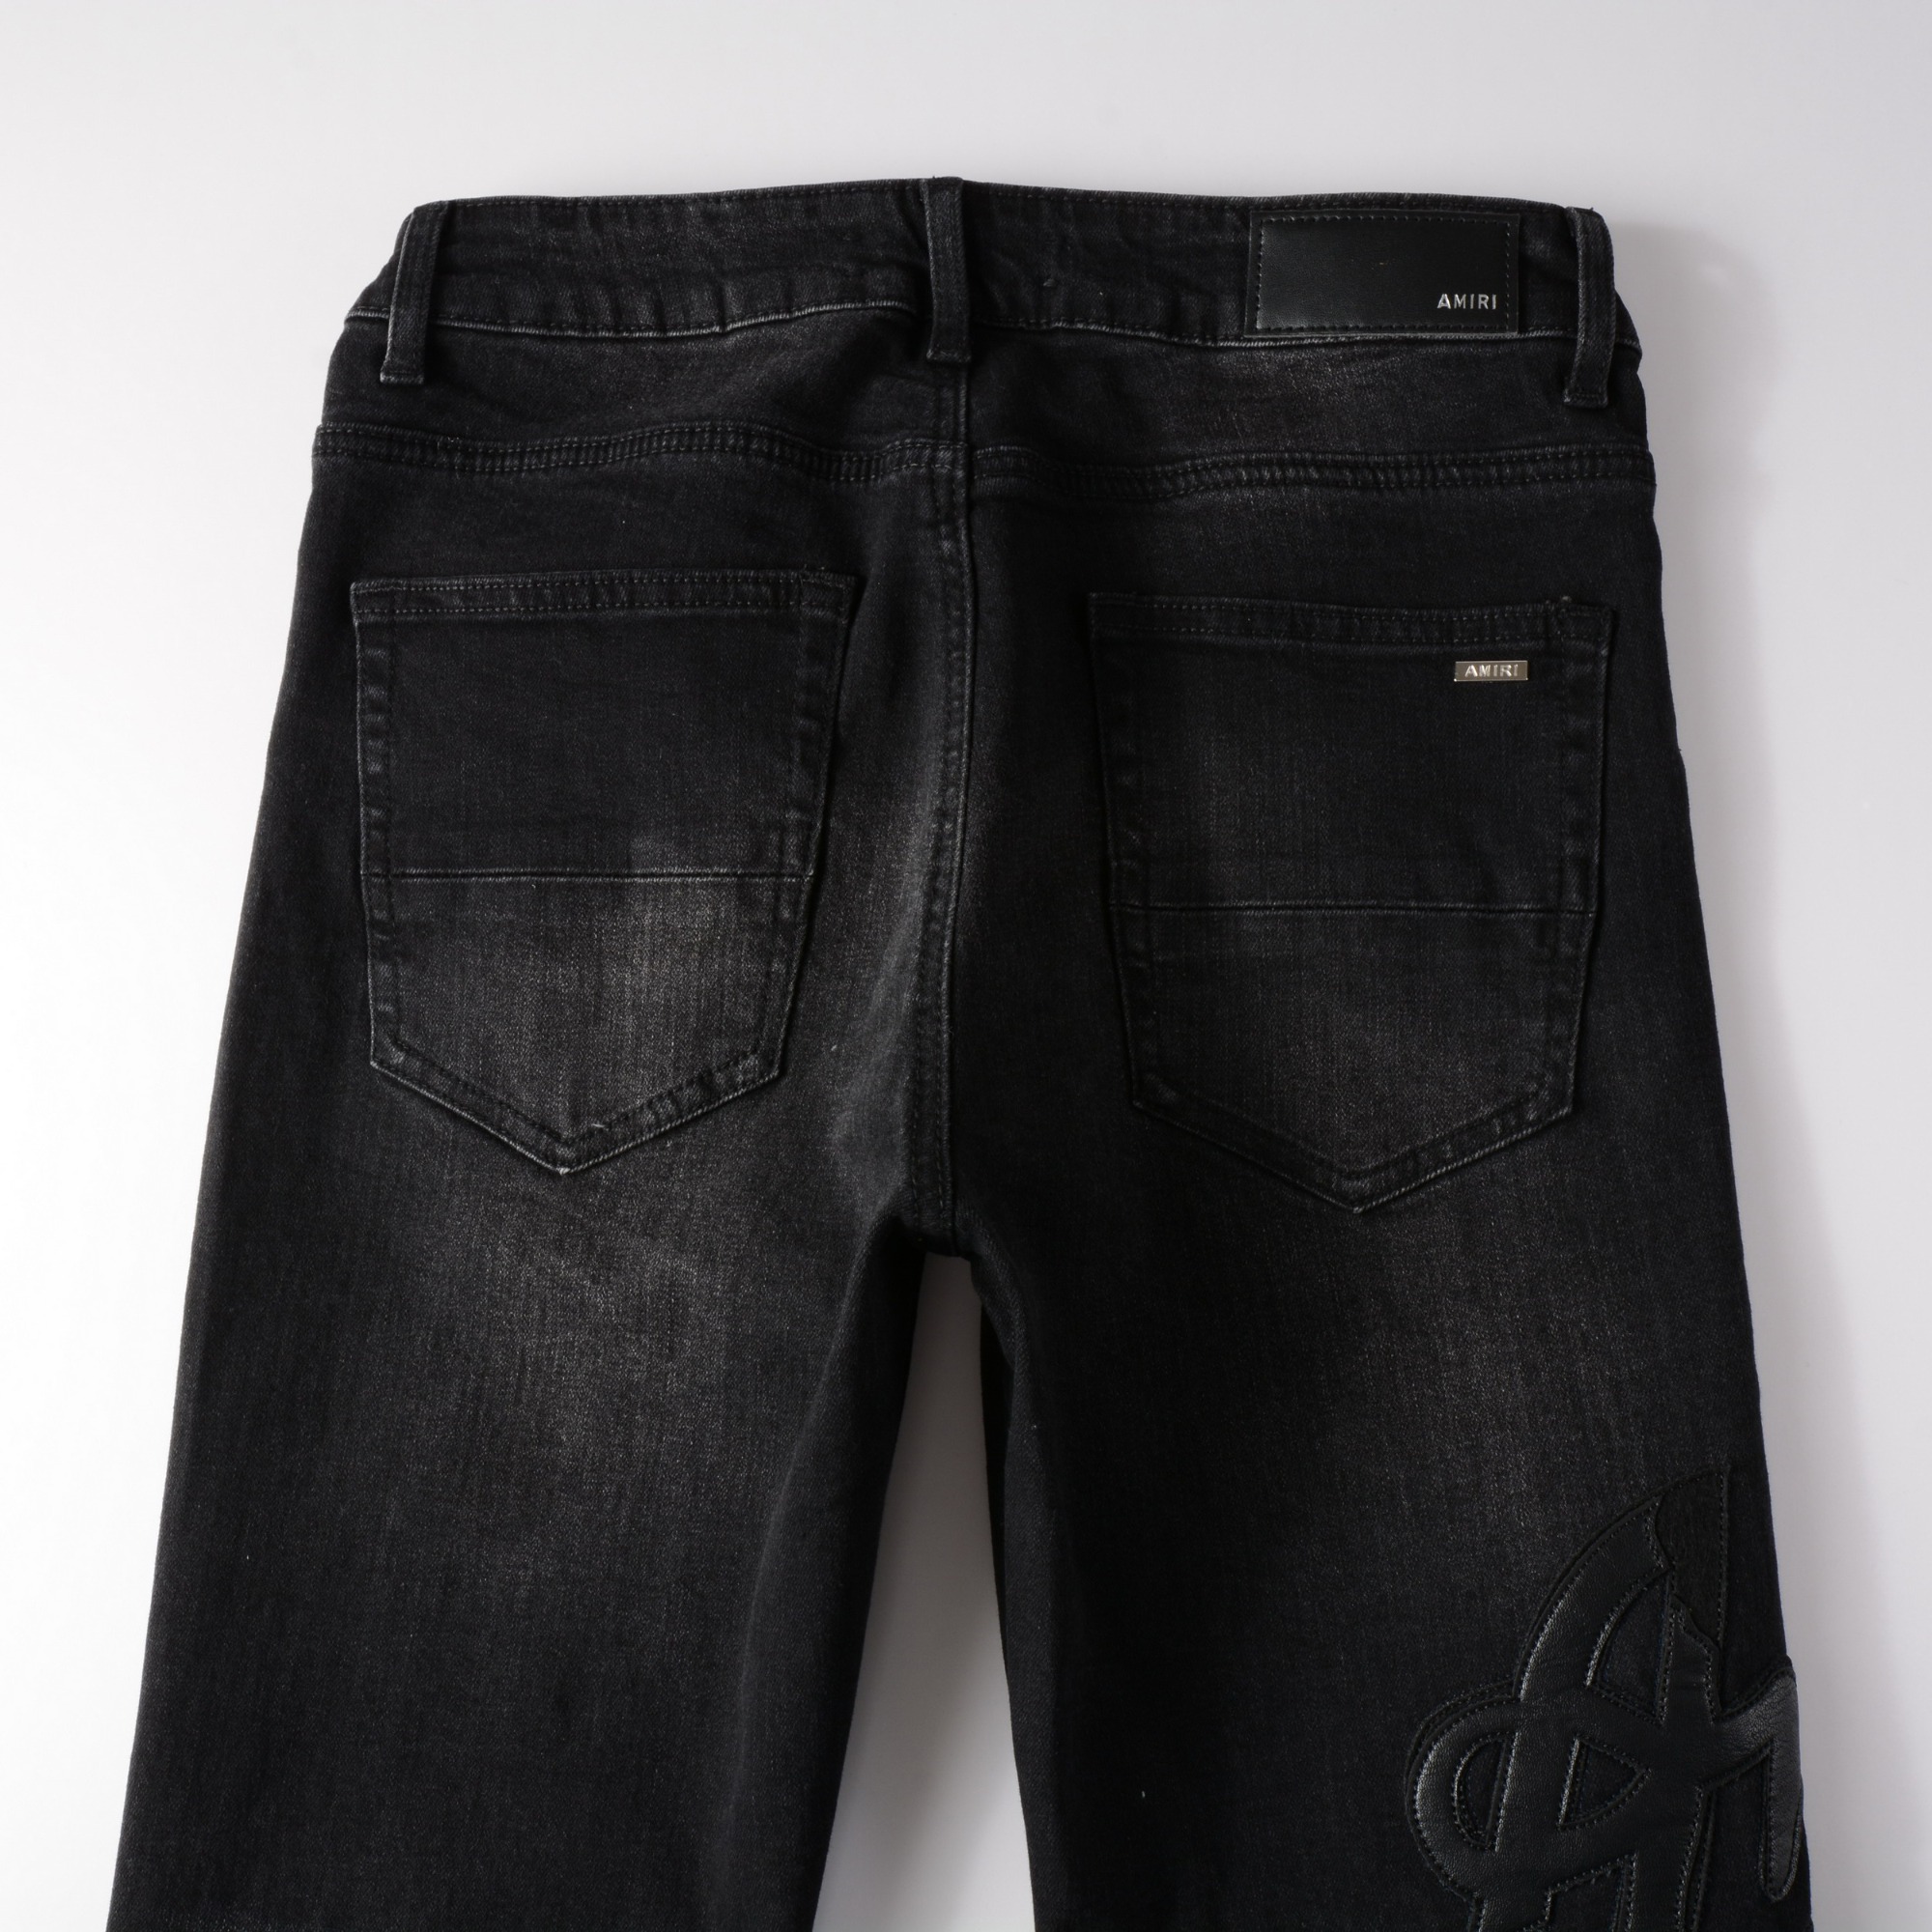 Amiri #1312 jeans black Reps Replica Ninjahype Dhgate Repdog Pandabuy Men